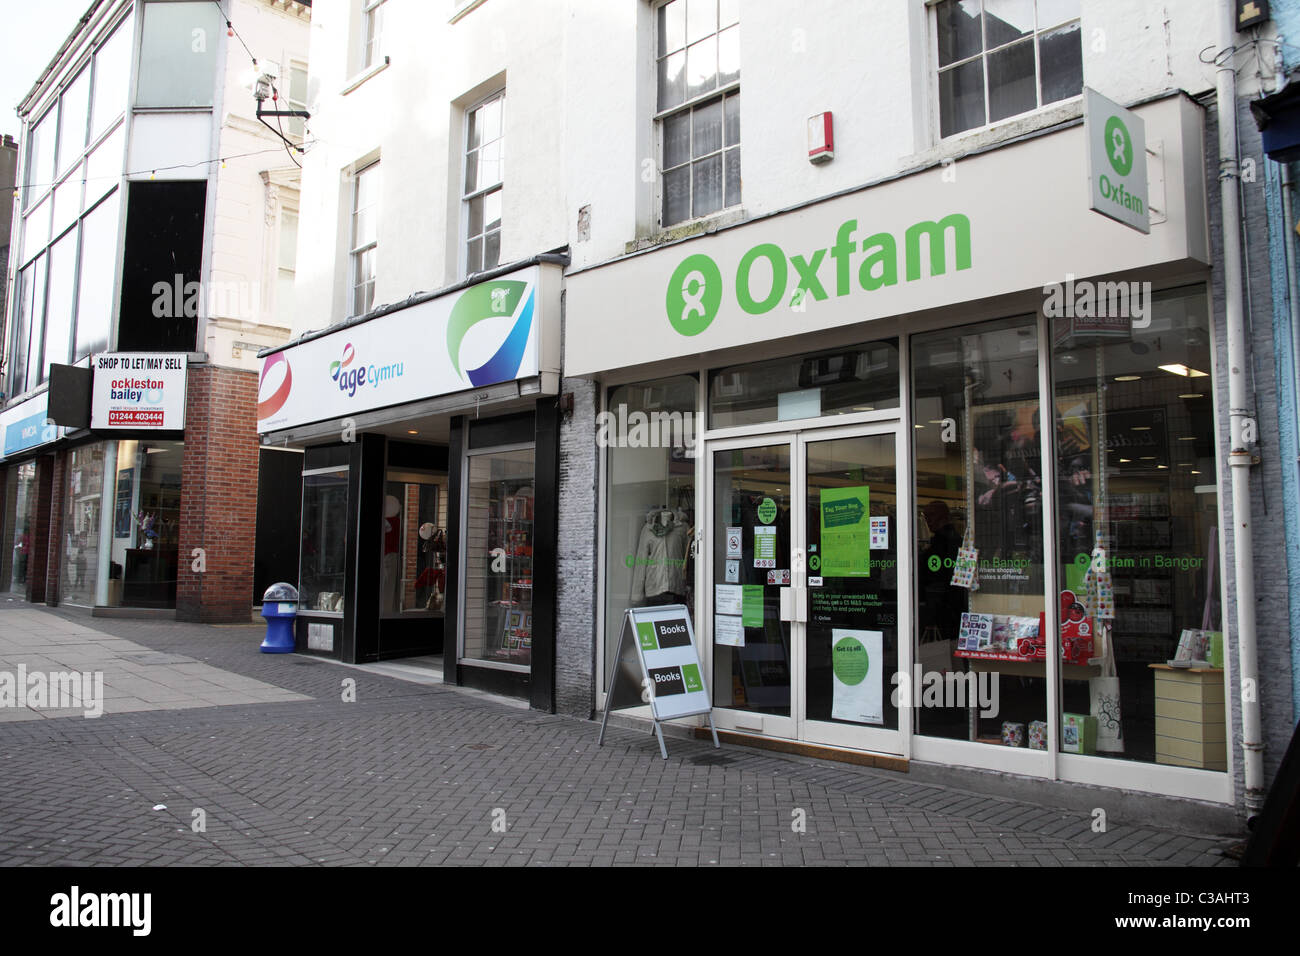 Adiacente negozi caritatevoli, età Cymru e Oxfam, Bangor High Street, Galles Foto Stock